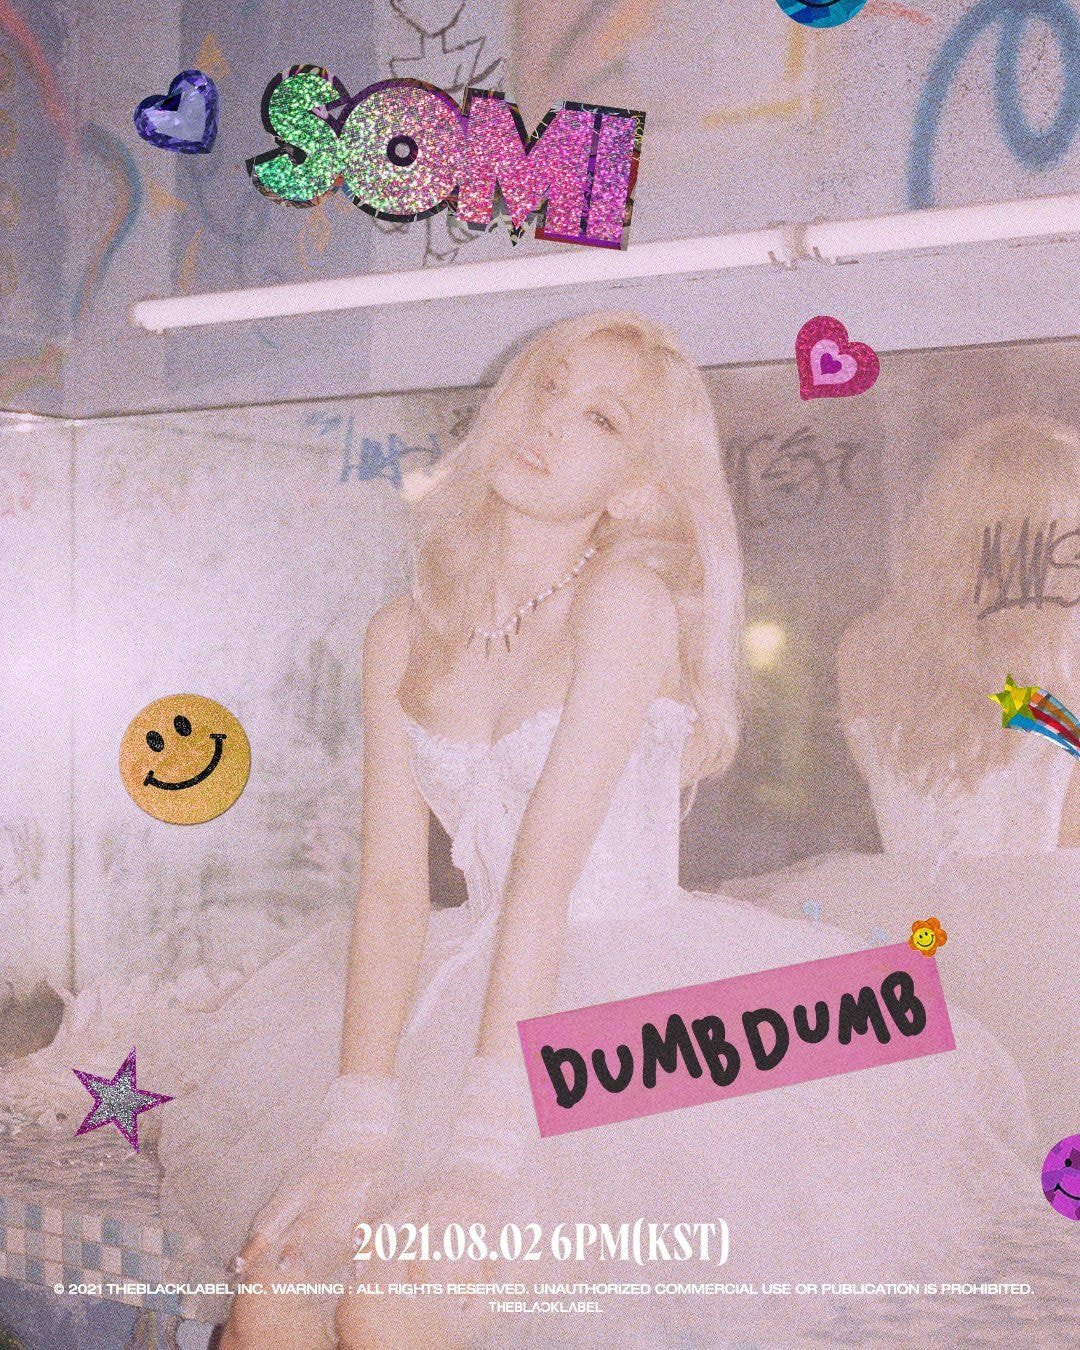 ?소미 SOMI - DUMB DUMB 2021.08.02 6PM (KST) #DUMBDUMB #SINGLE 티저?